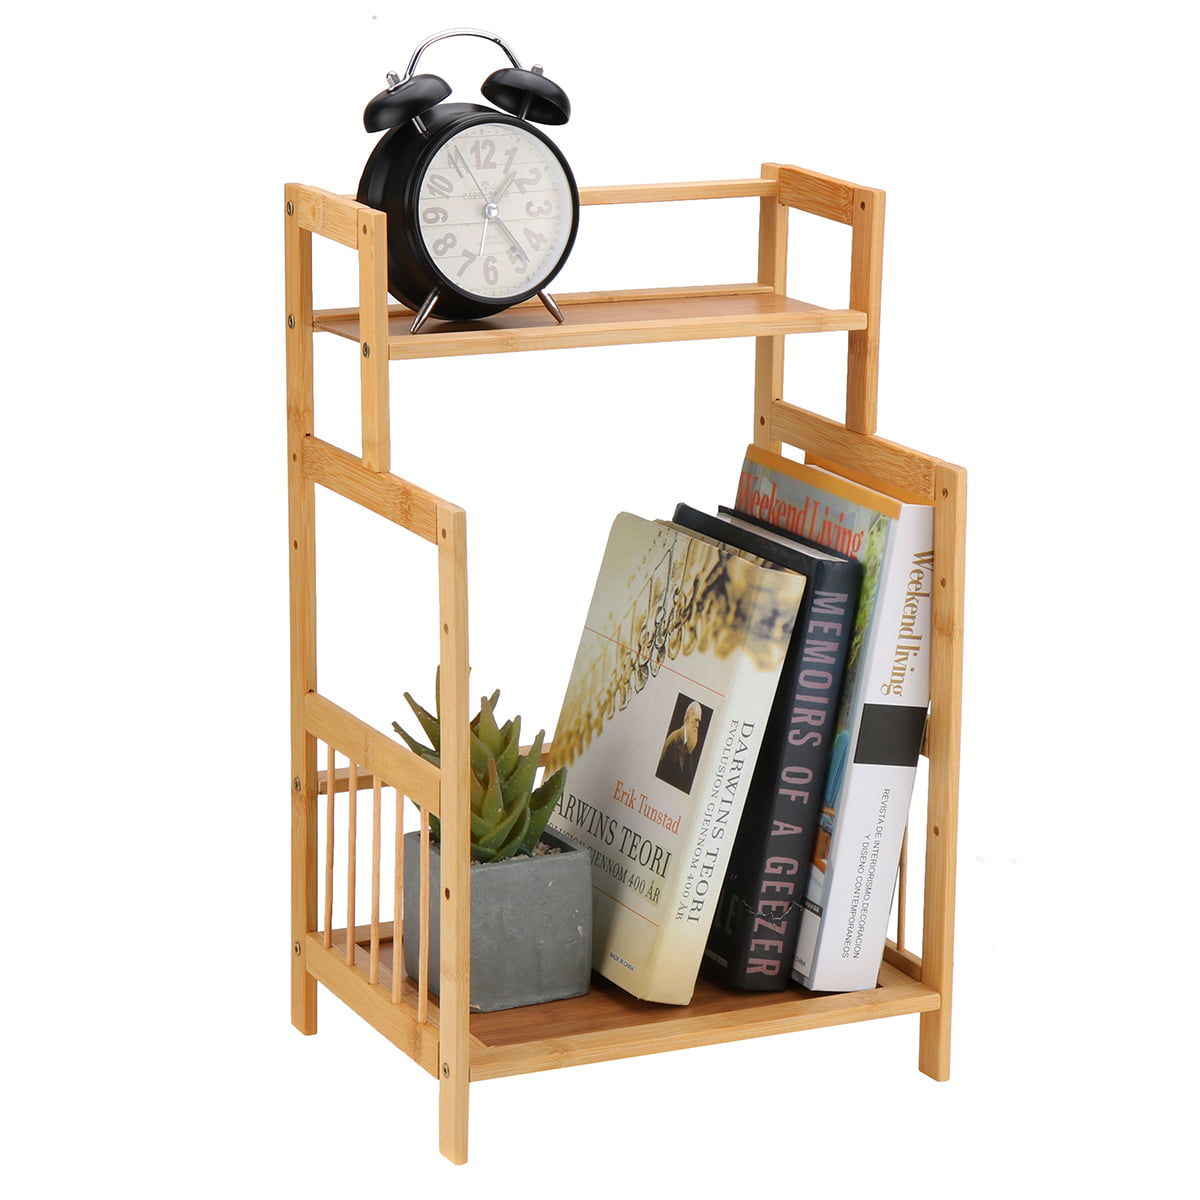 2/3/4 Tier Wooden Bookshelf Storage Organizer Display Home Office Furniture New 